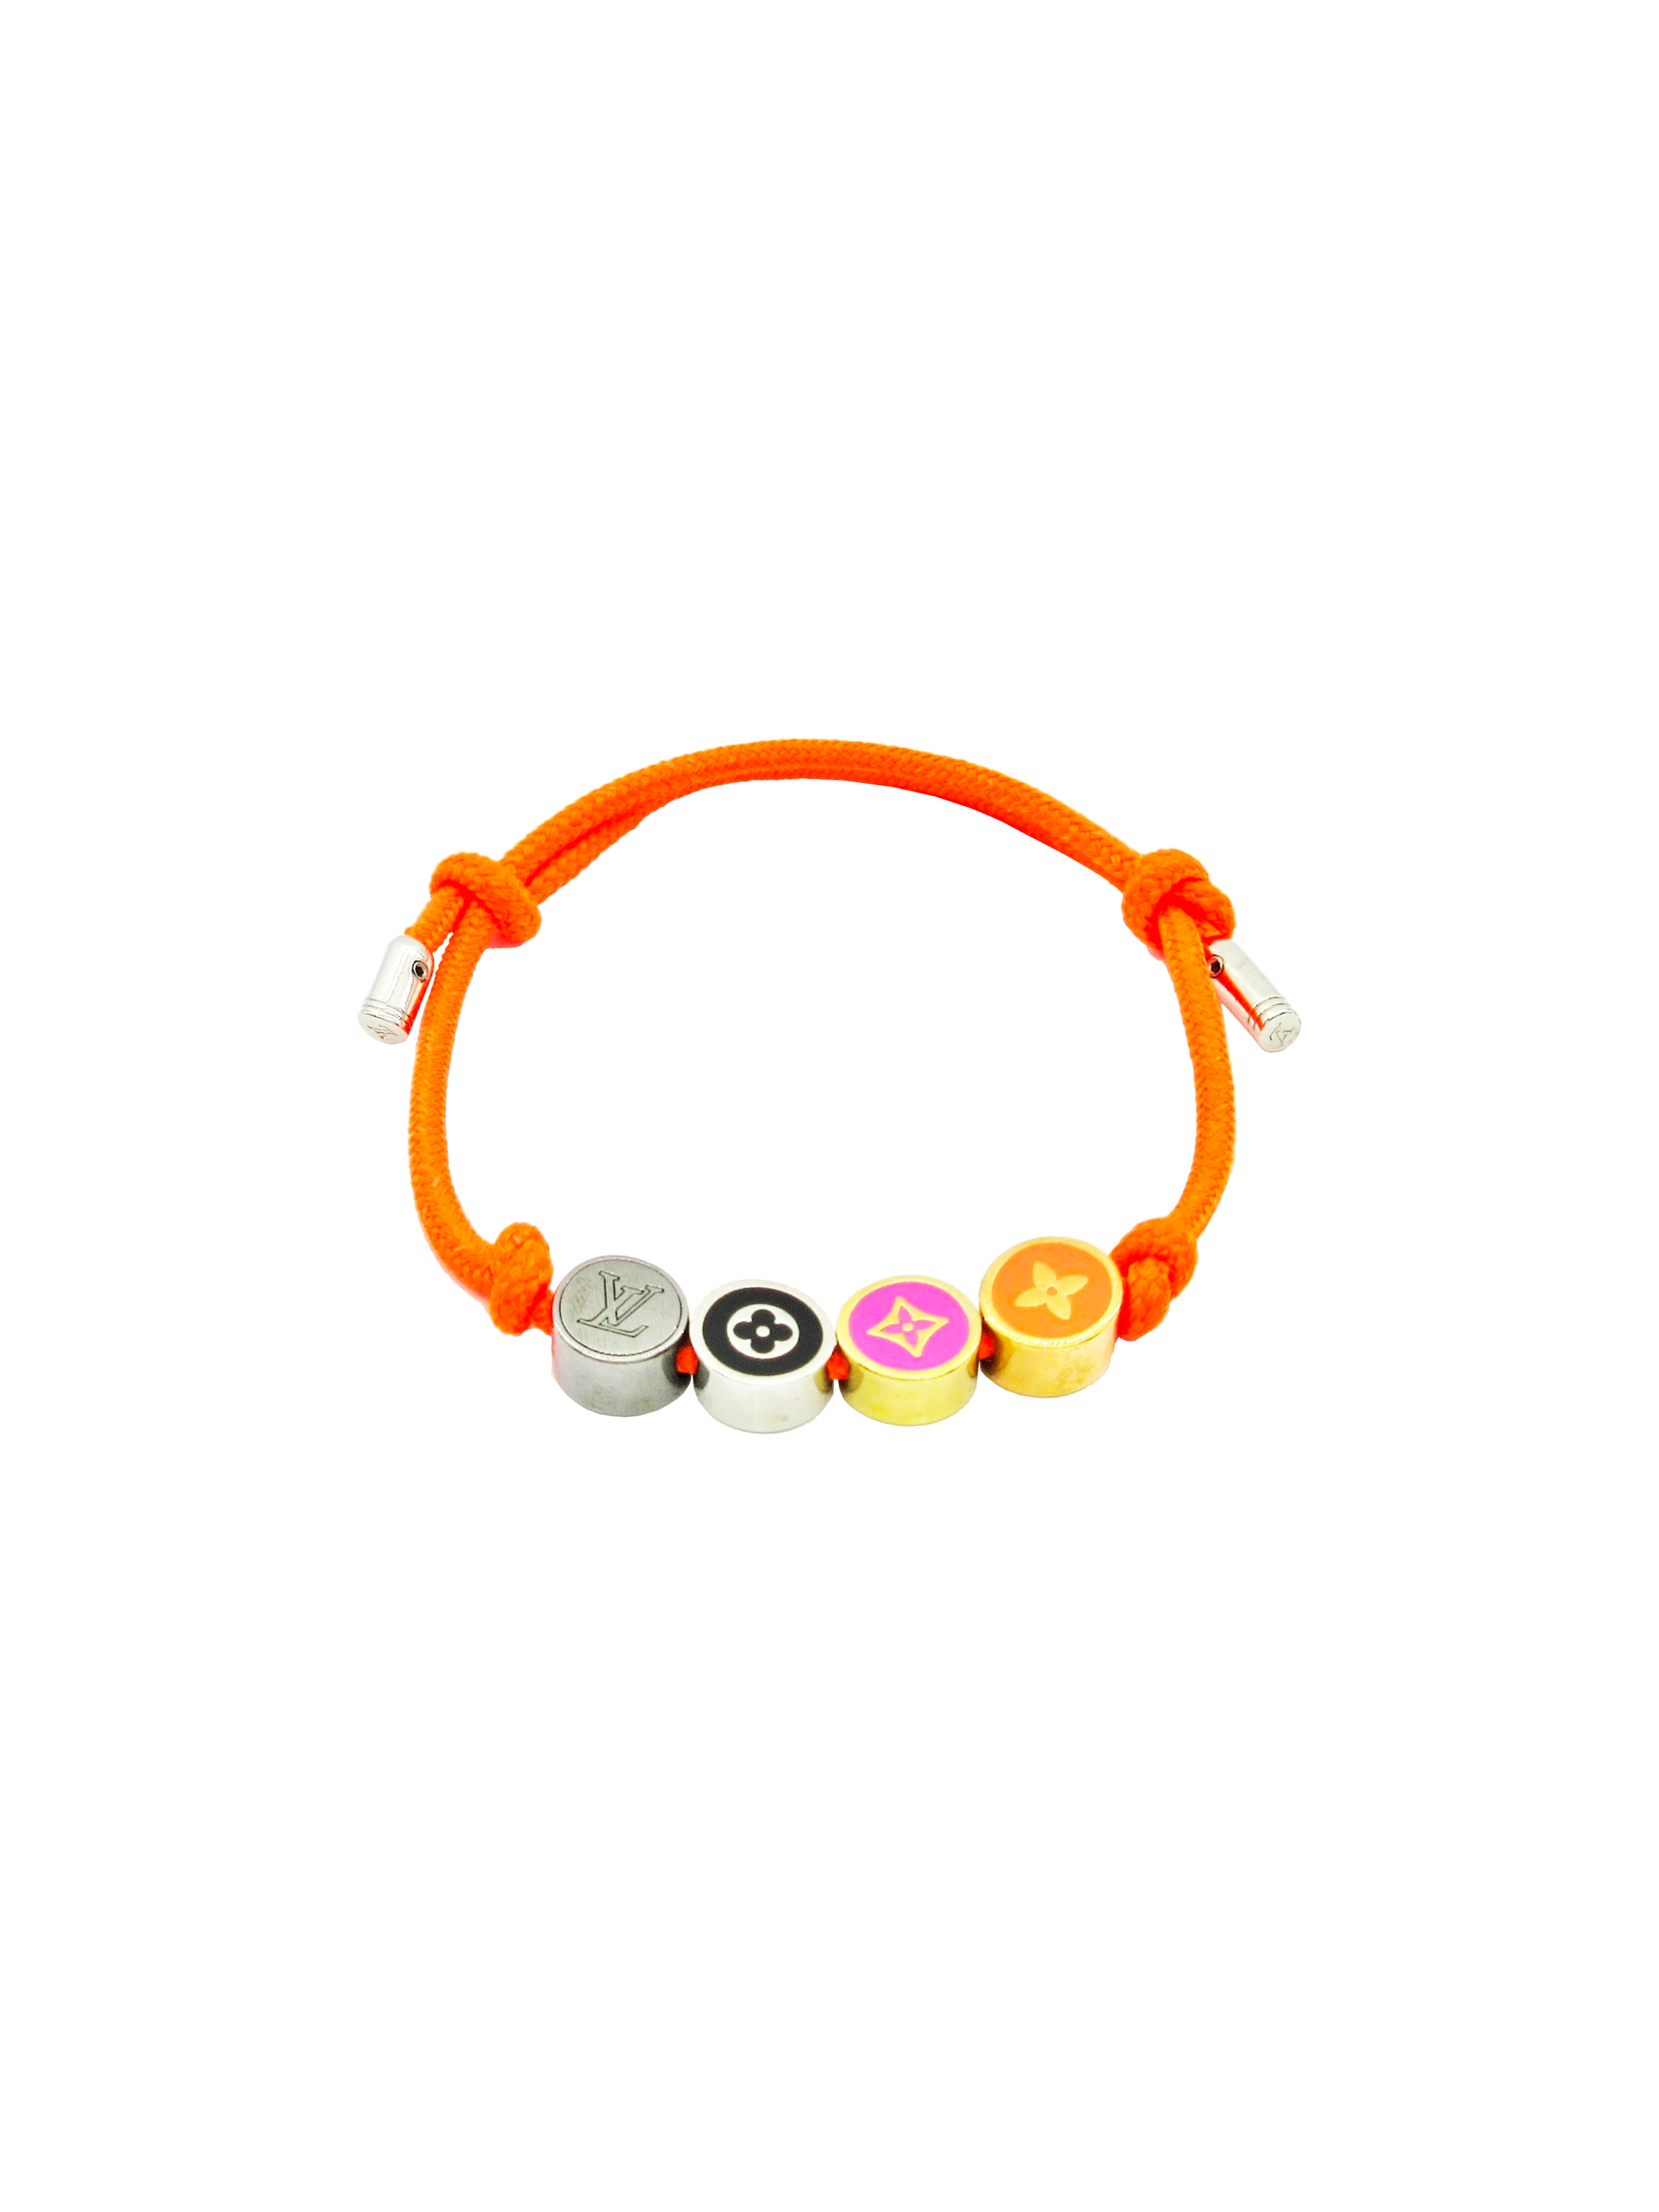 Louis Vuitton 2000s Multi-Charm Orange Bracelet